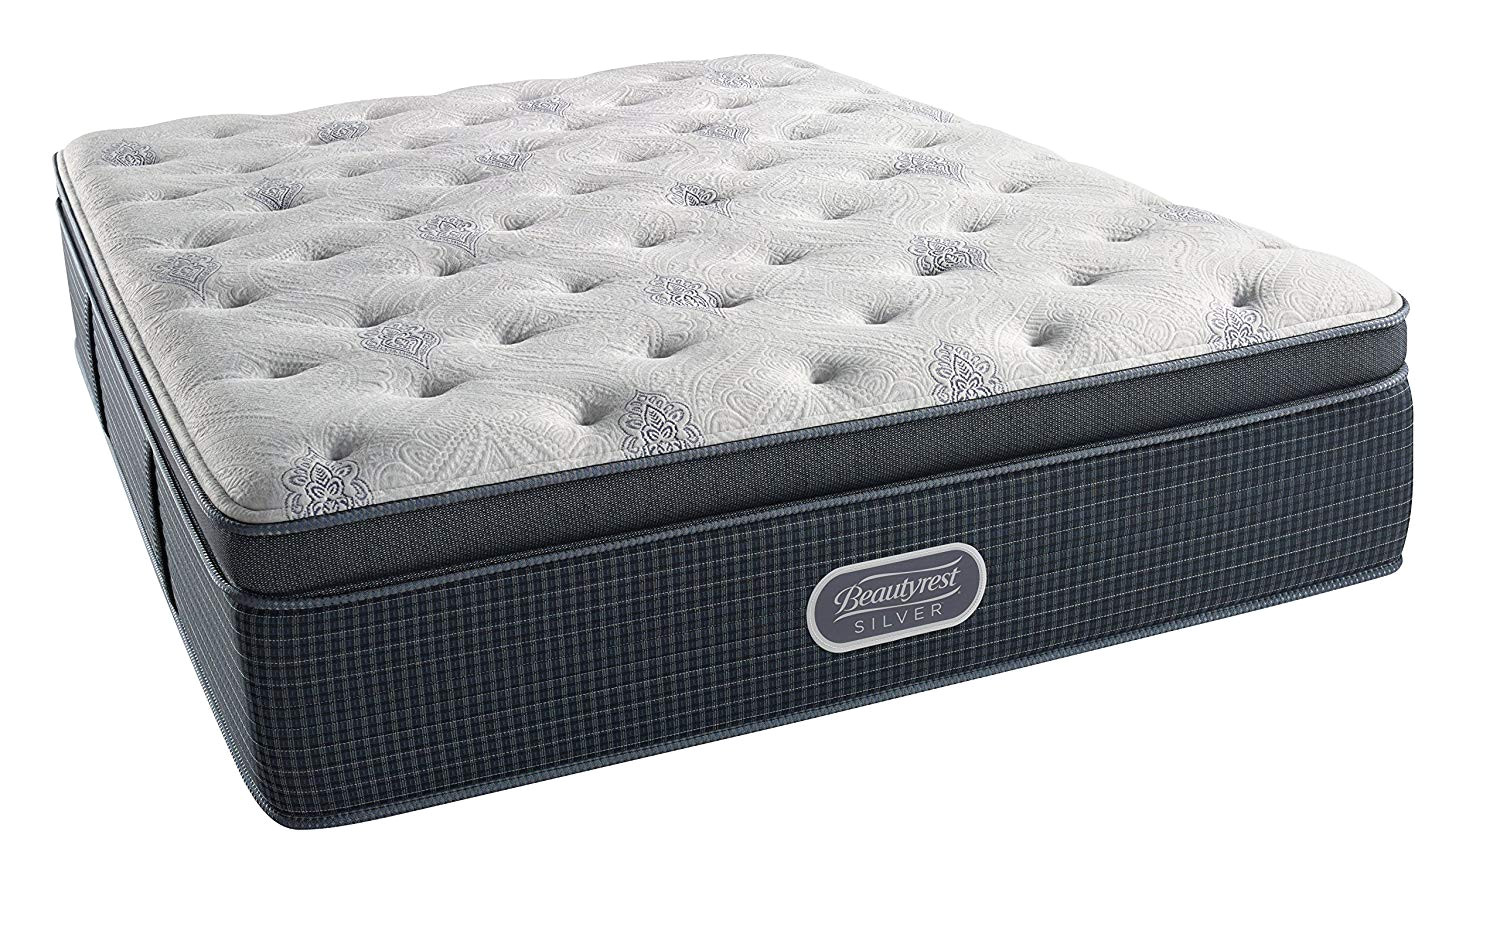 amazon com beautyrest silver luxury firm pillowtop 900 queen innerspring mattress kitchen dining